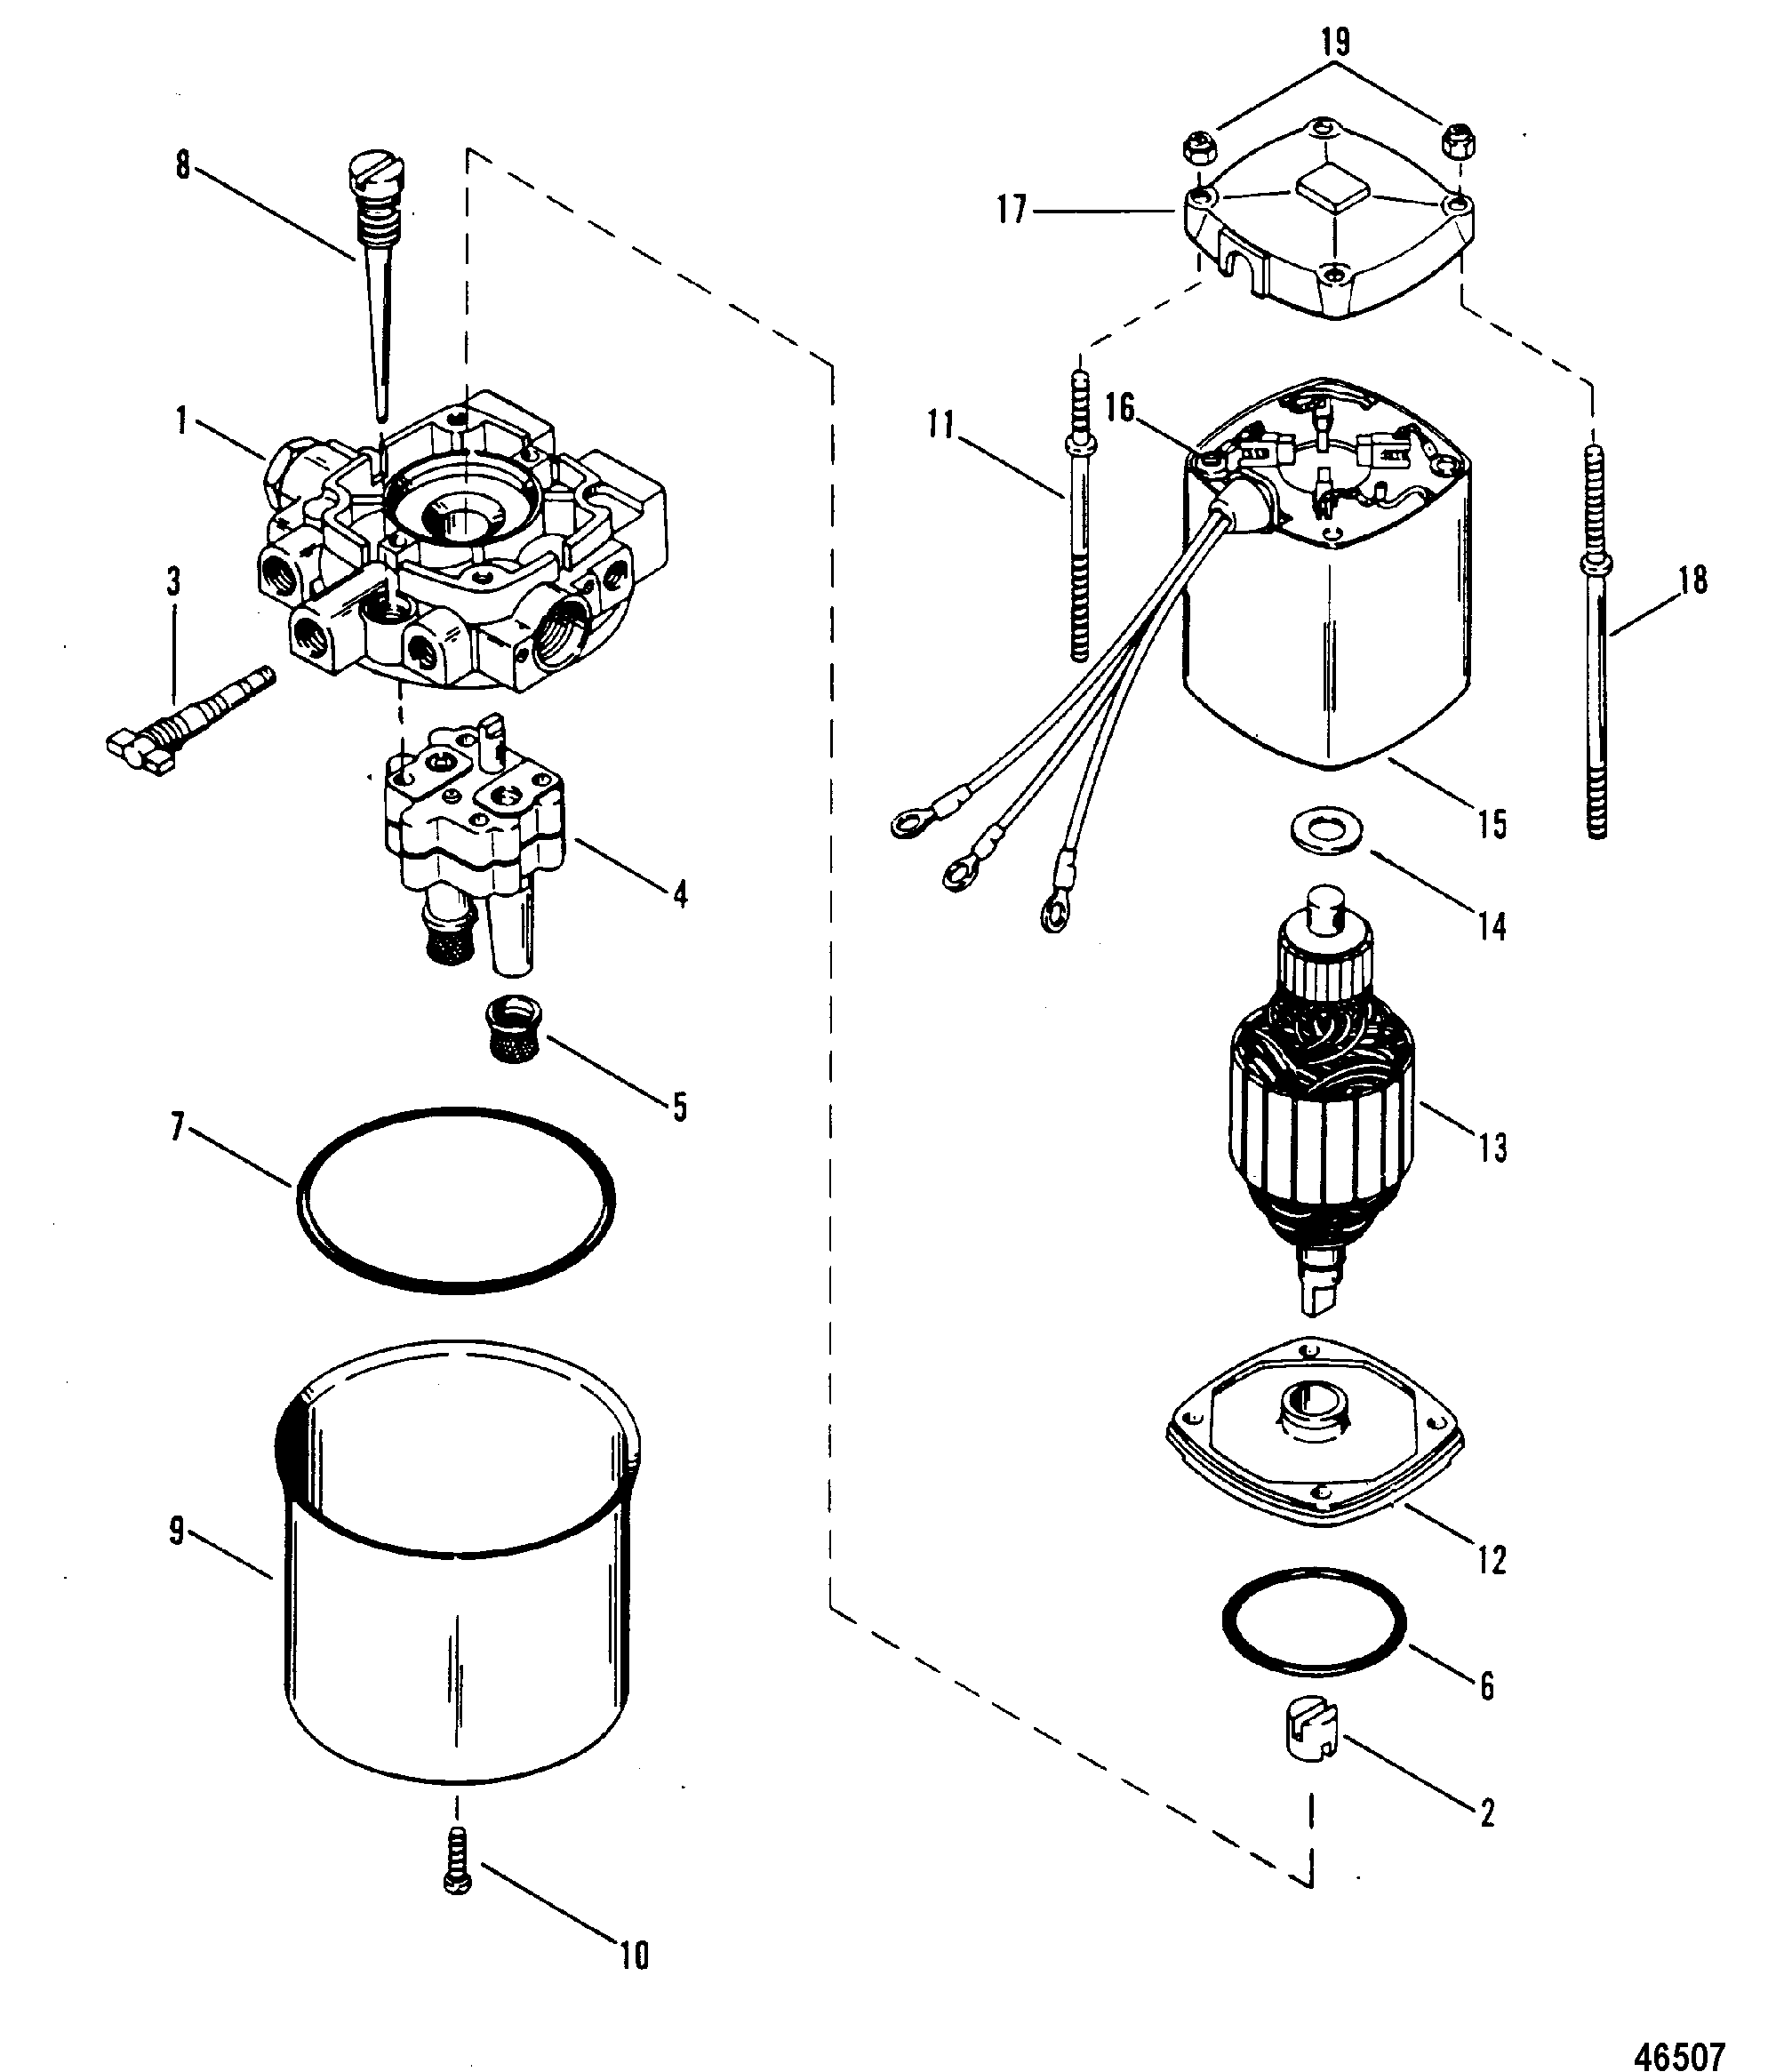 HYDRAULIC PUMP(DESIGN I)